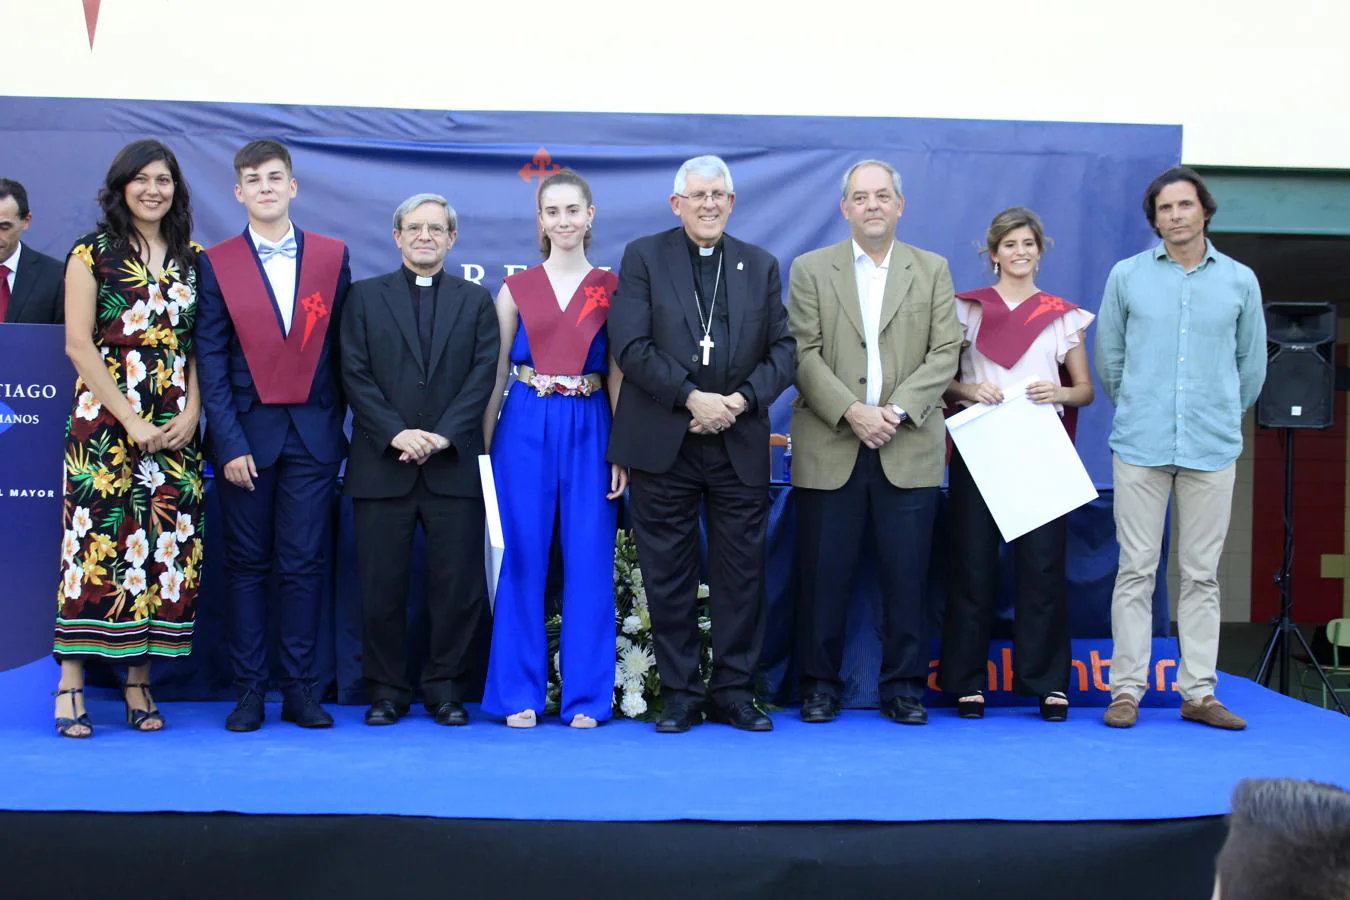 La graduación de los alumnos del colegio Santiago el Mayor de Toledo, en imágenes